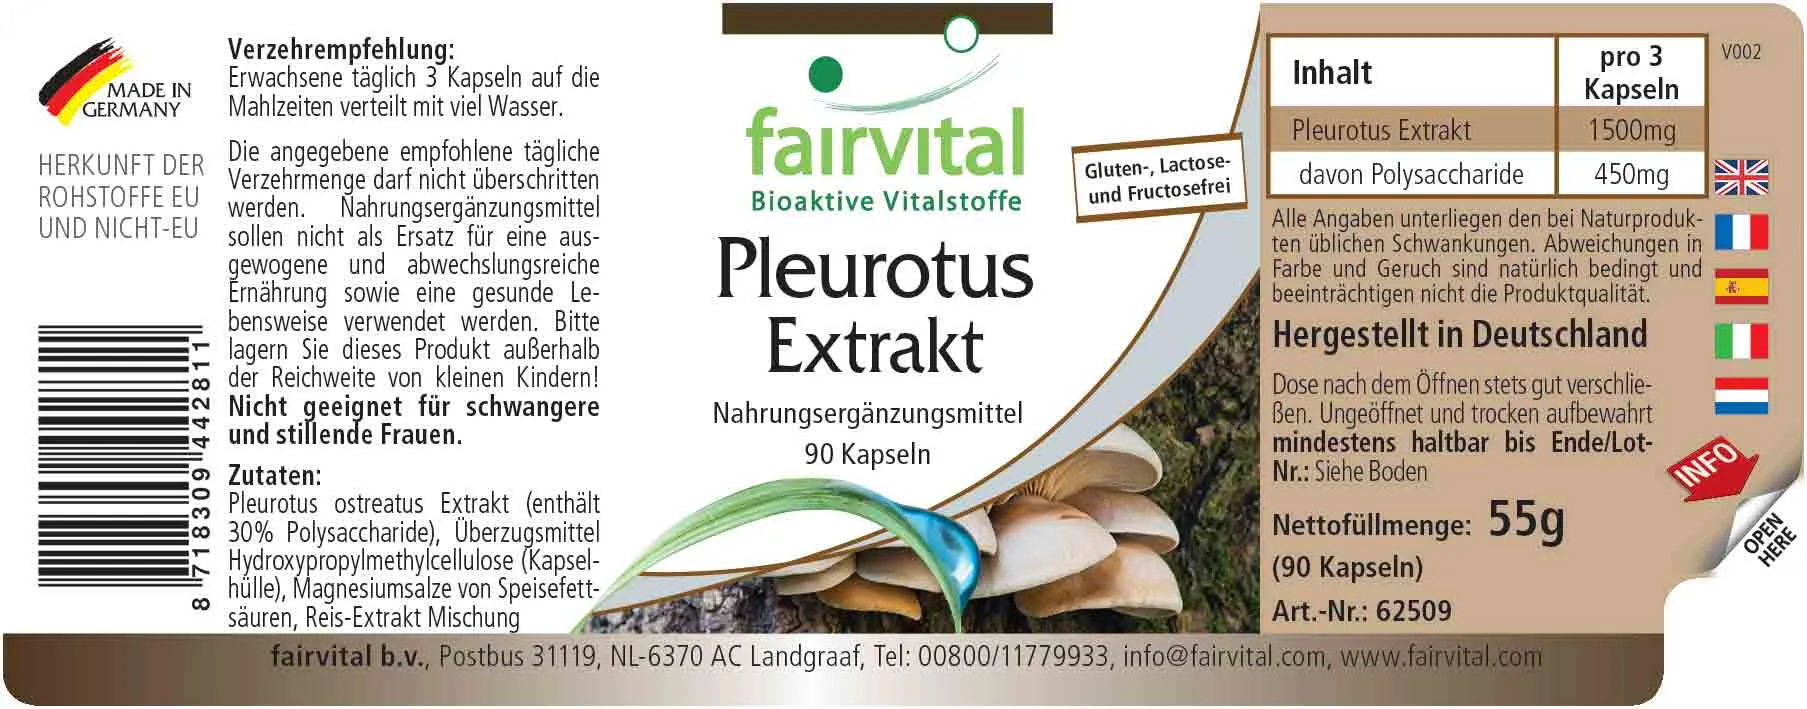 Pleurotus extract - 90 capsules